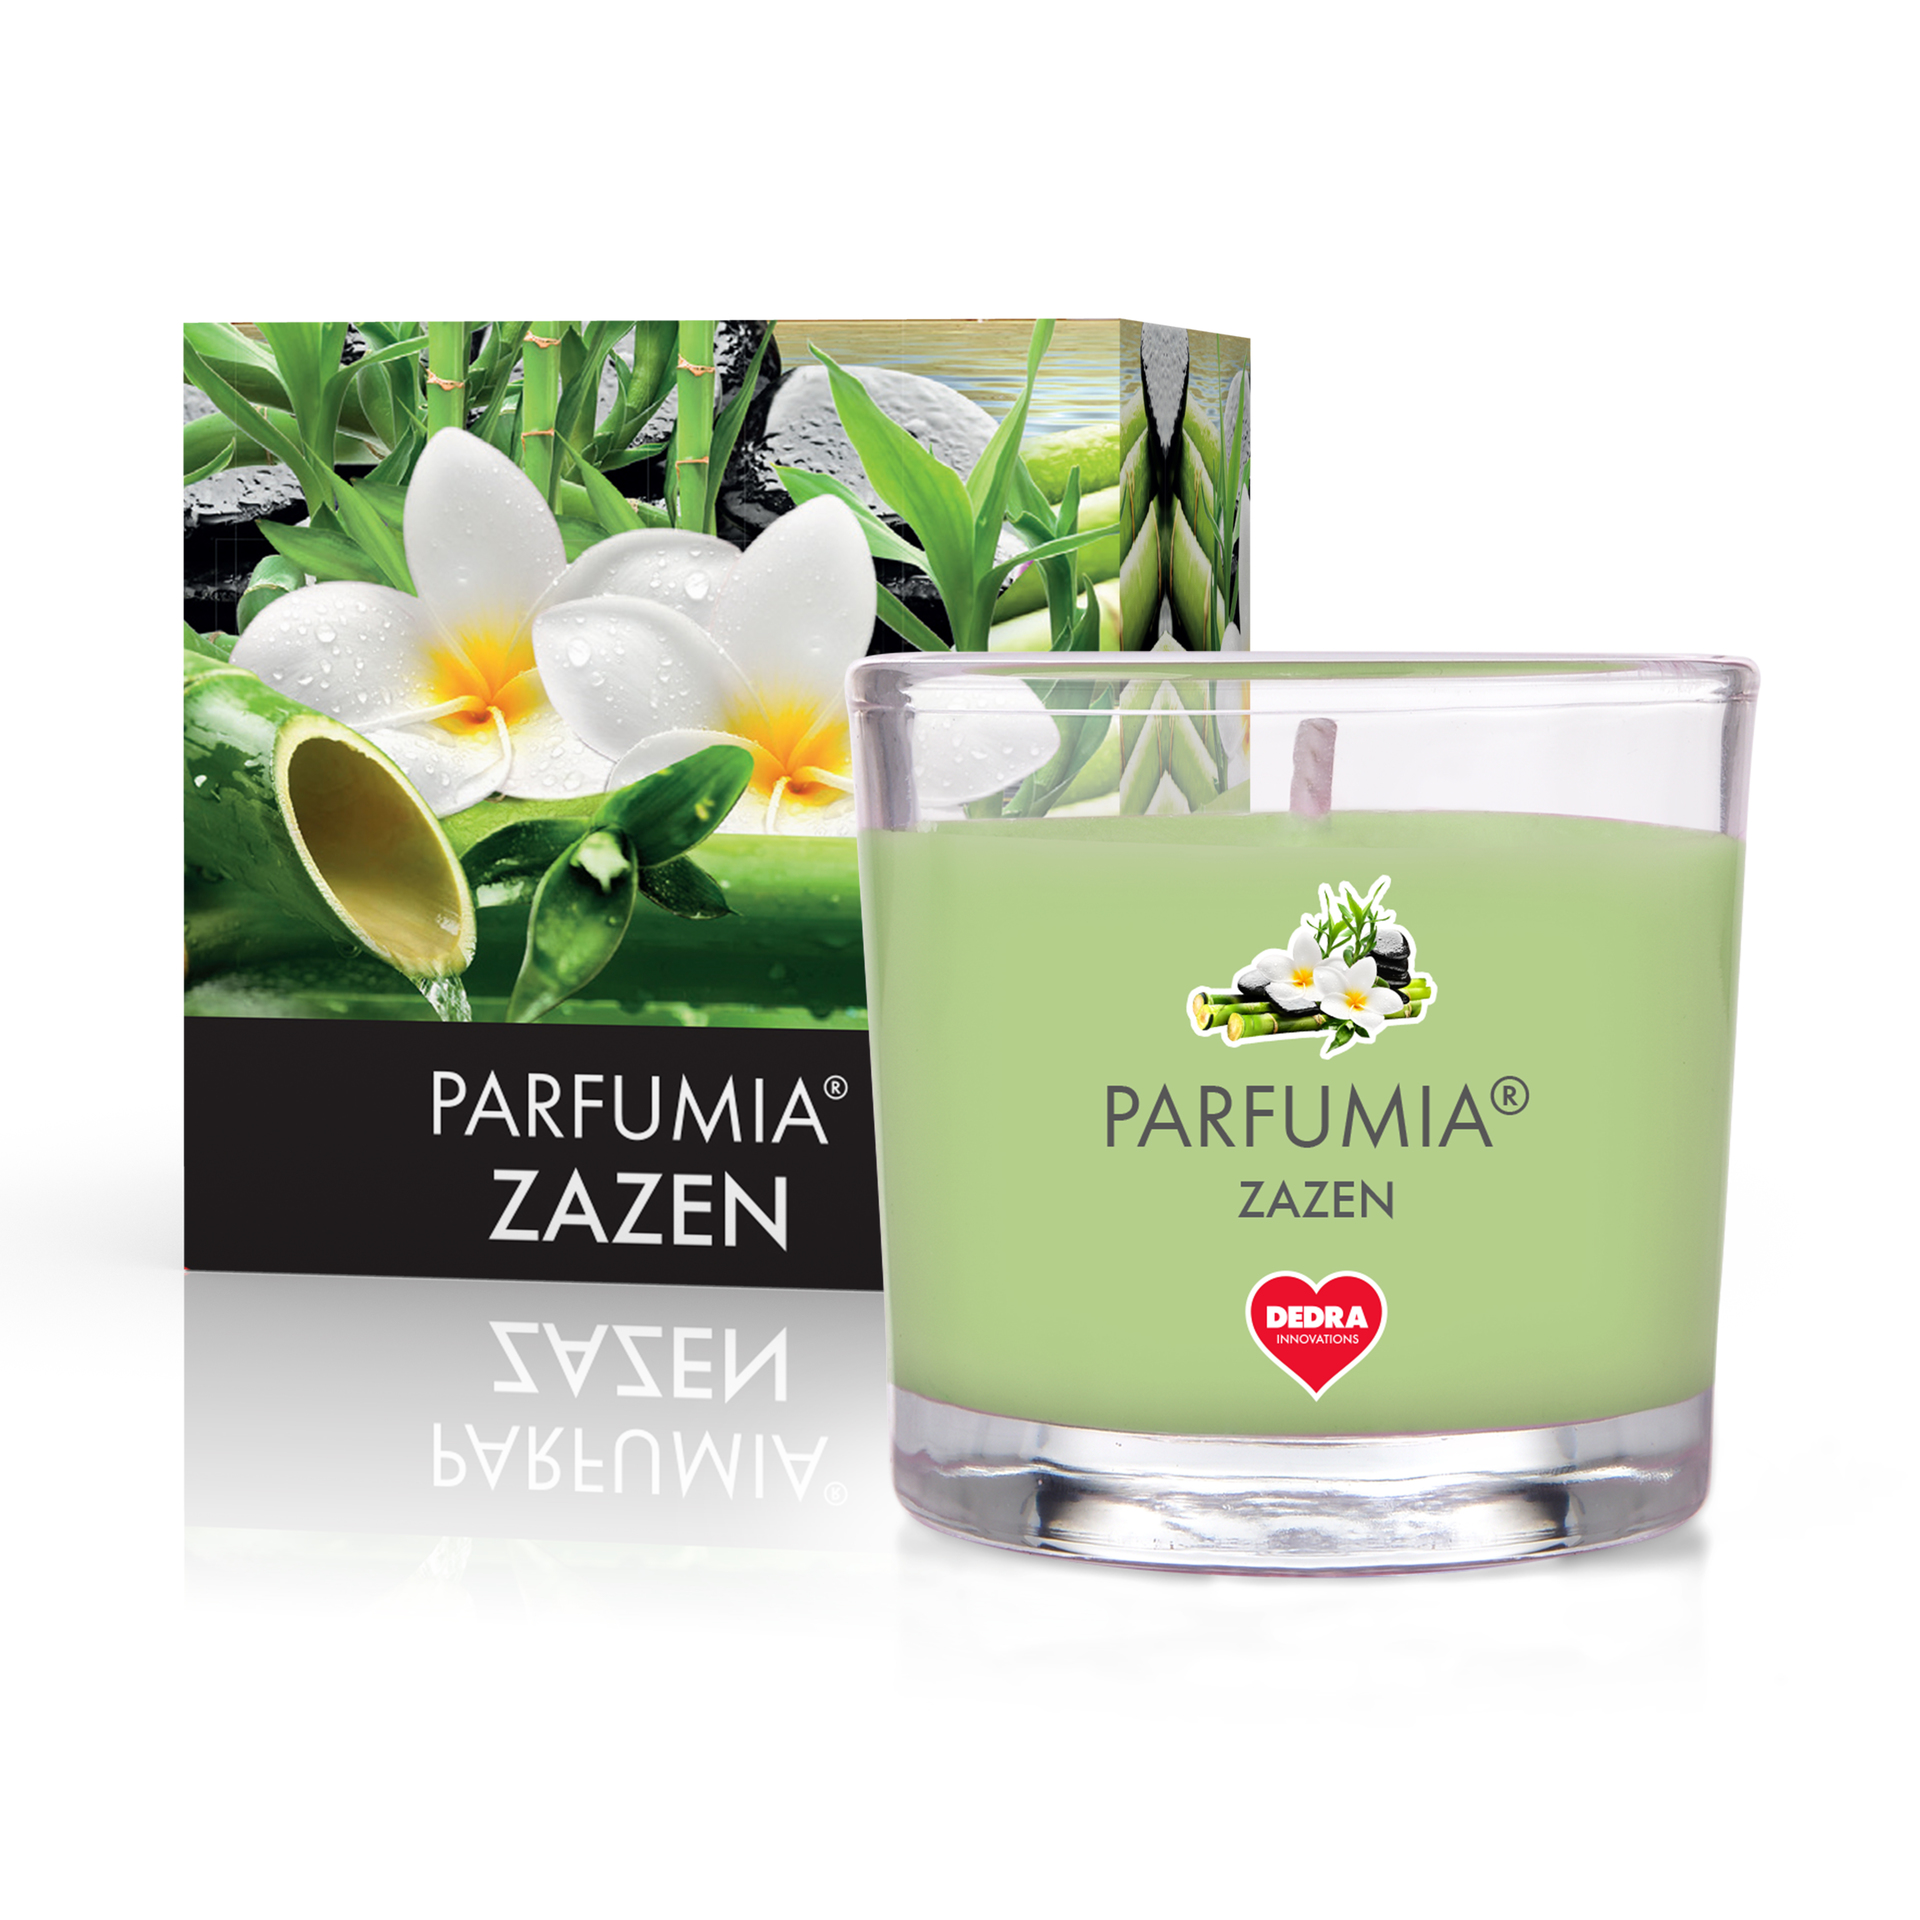 55 ml votivní sójová eko-svíce, Zazen, Parfumia